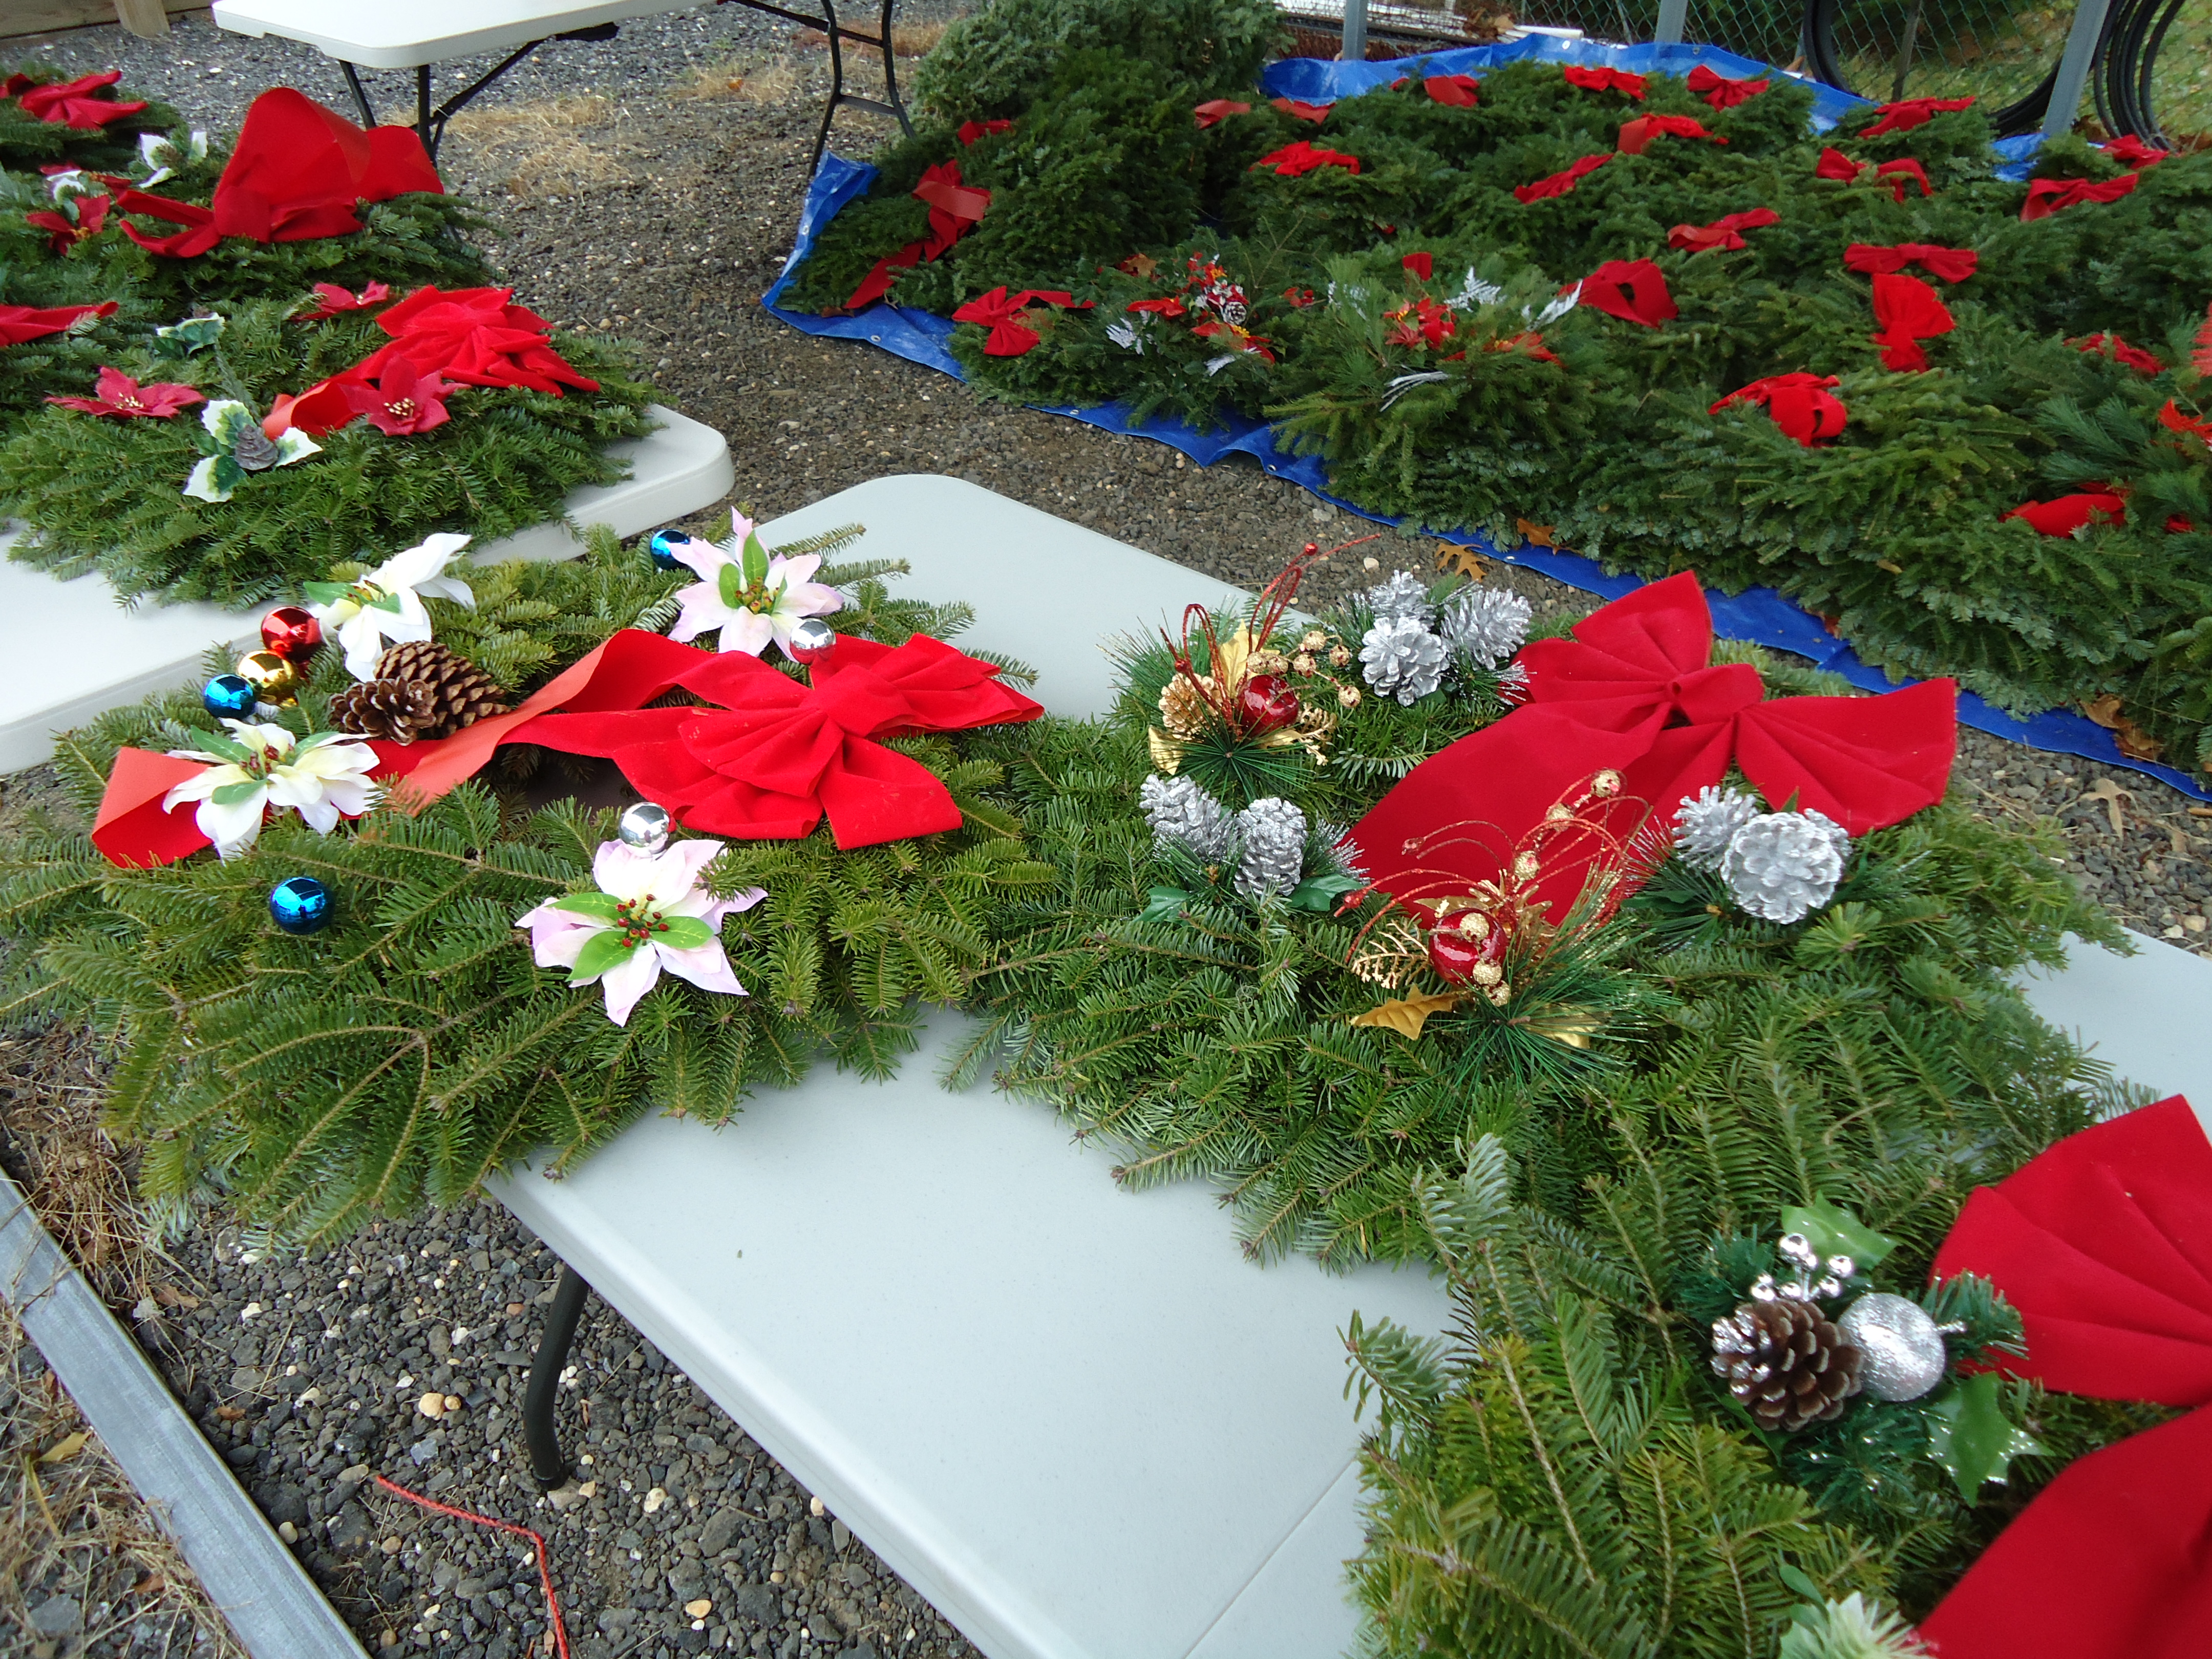 Wreaths on a table